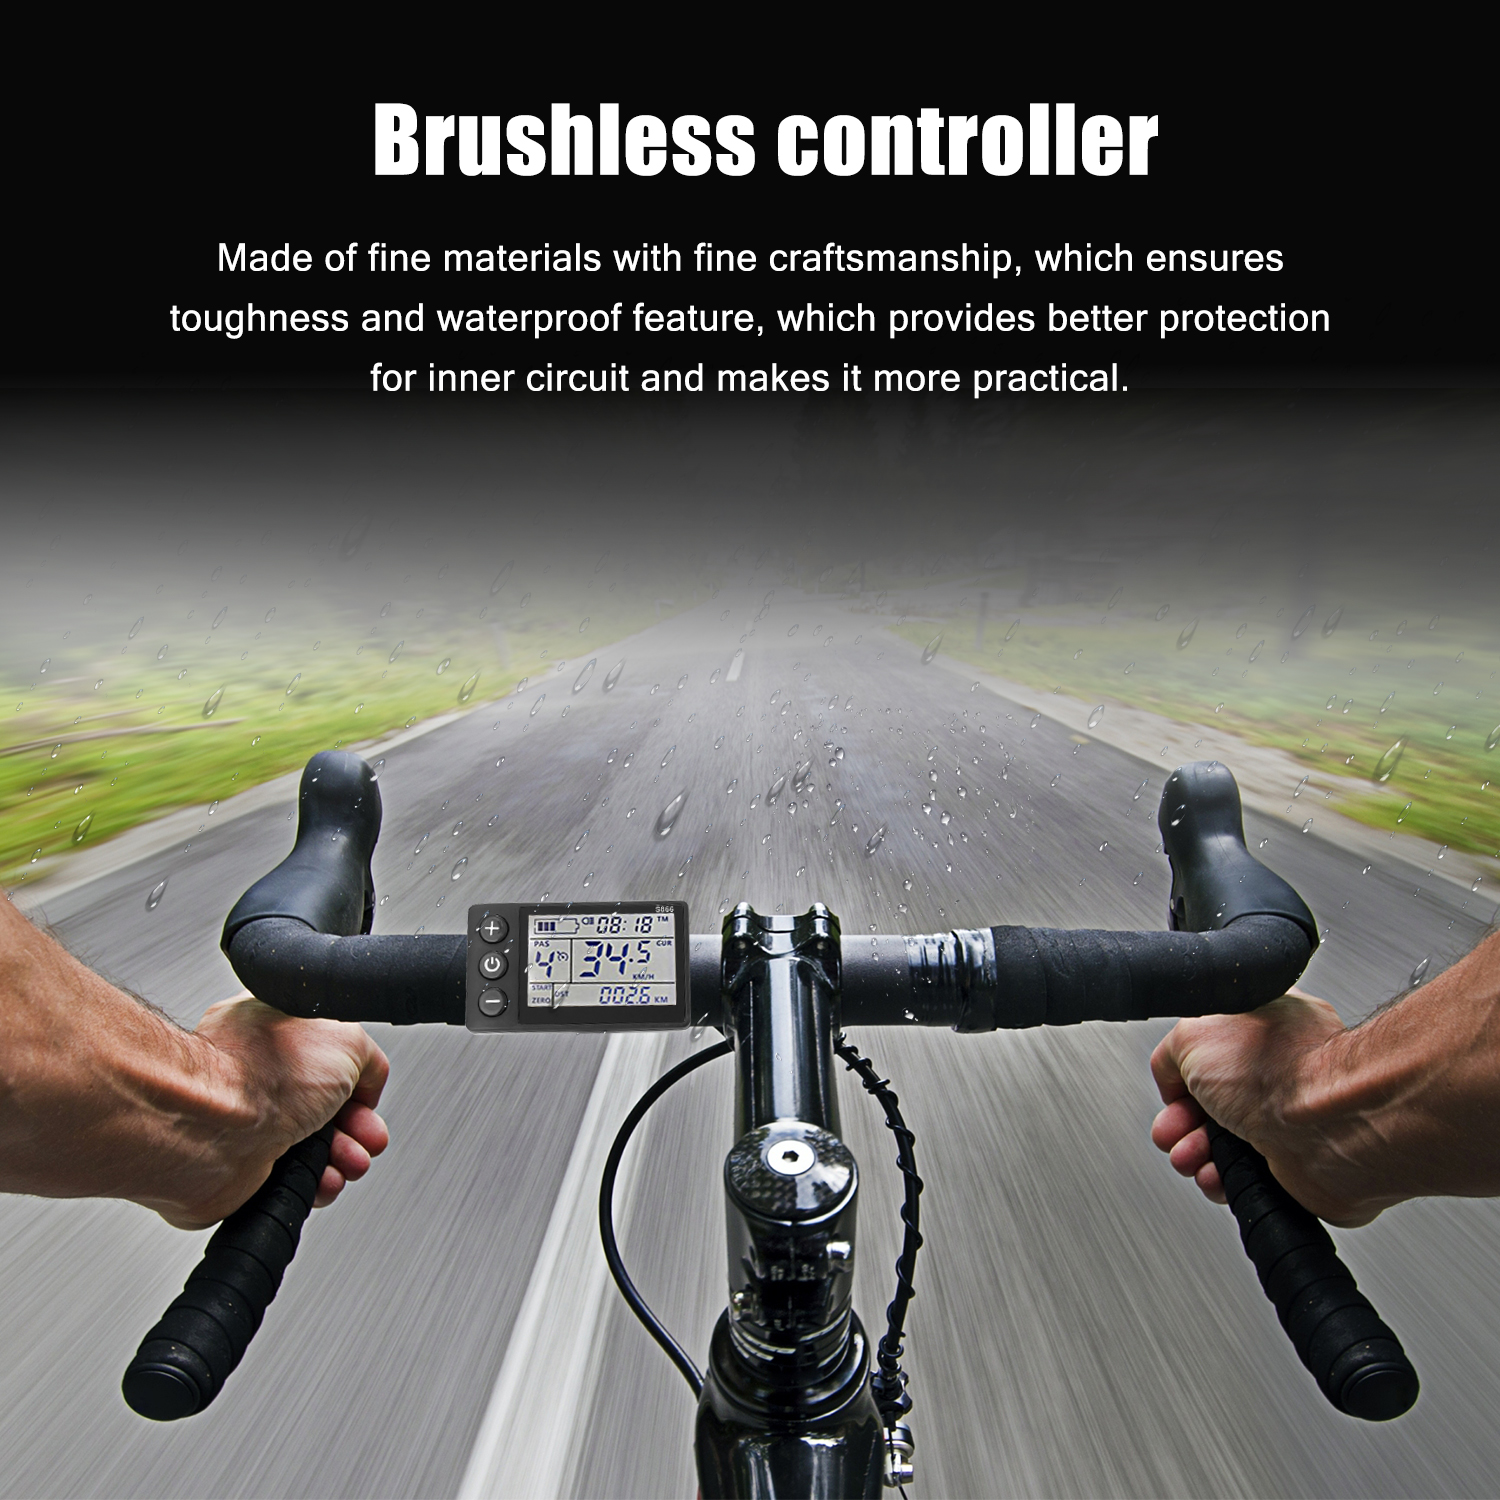 Elektrisk cykel controller 24v-48v/36v-60v 350w børsteløs e-cykel controller med lcd display cykler scooter controller  s866